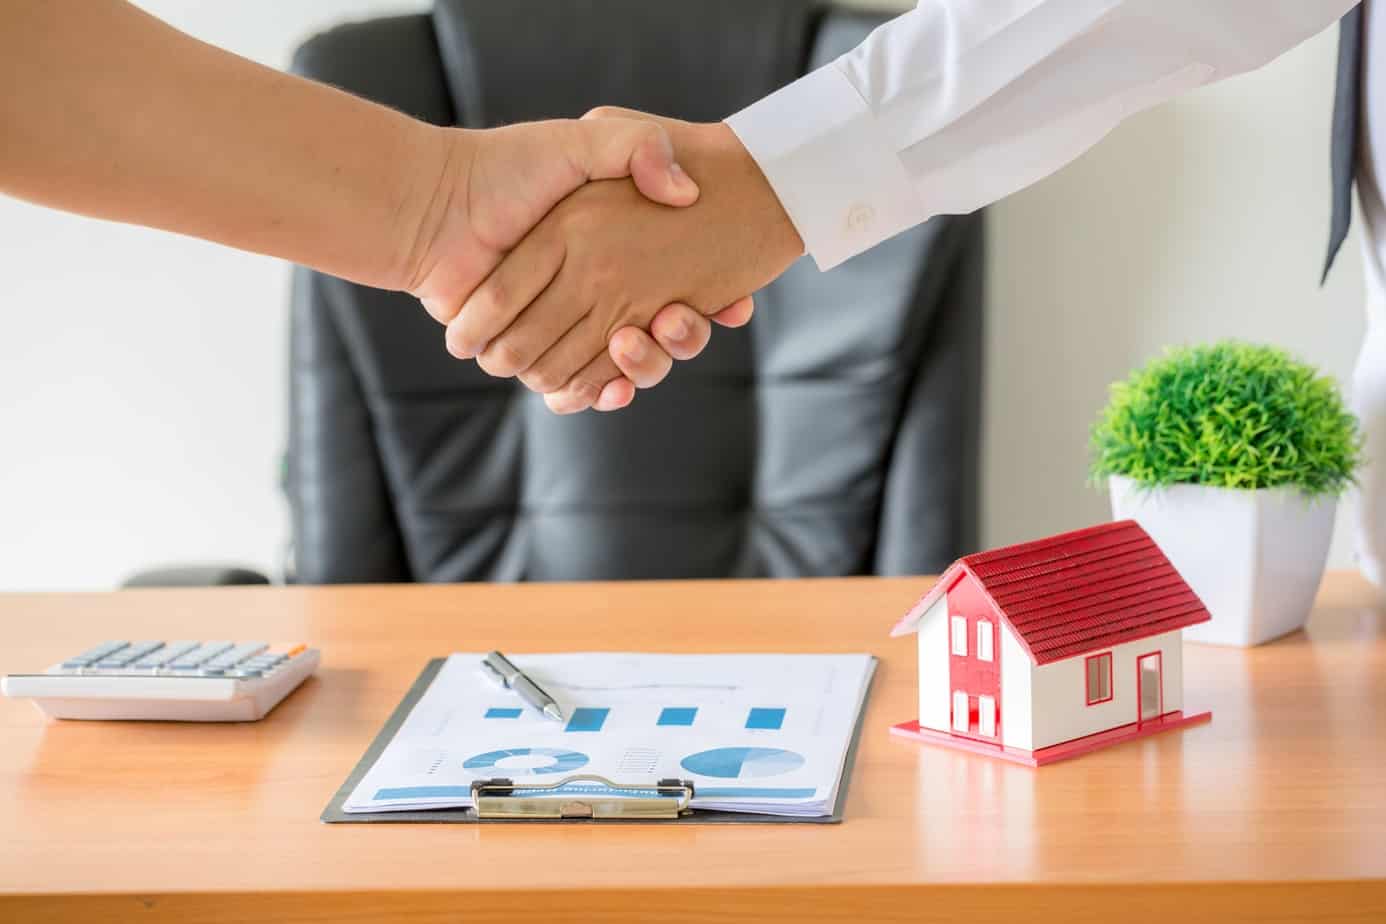 Bản án tranh chấp hợp đồng mua bán nhà ở hình thành trong tương lai